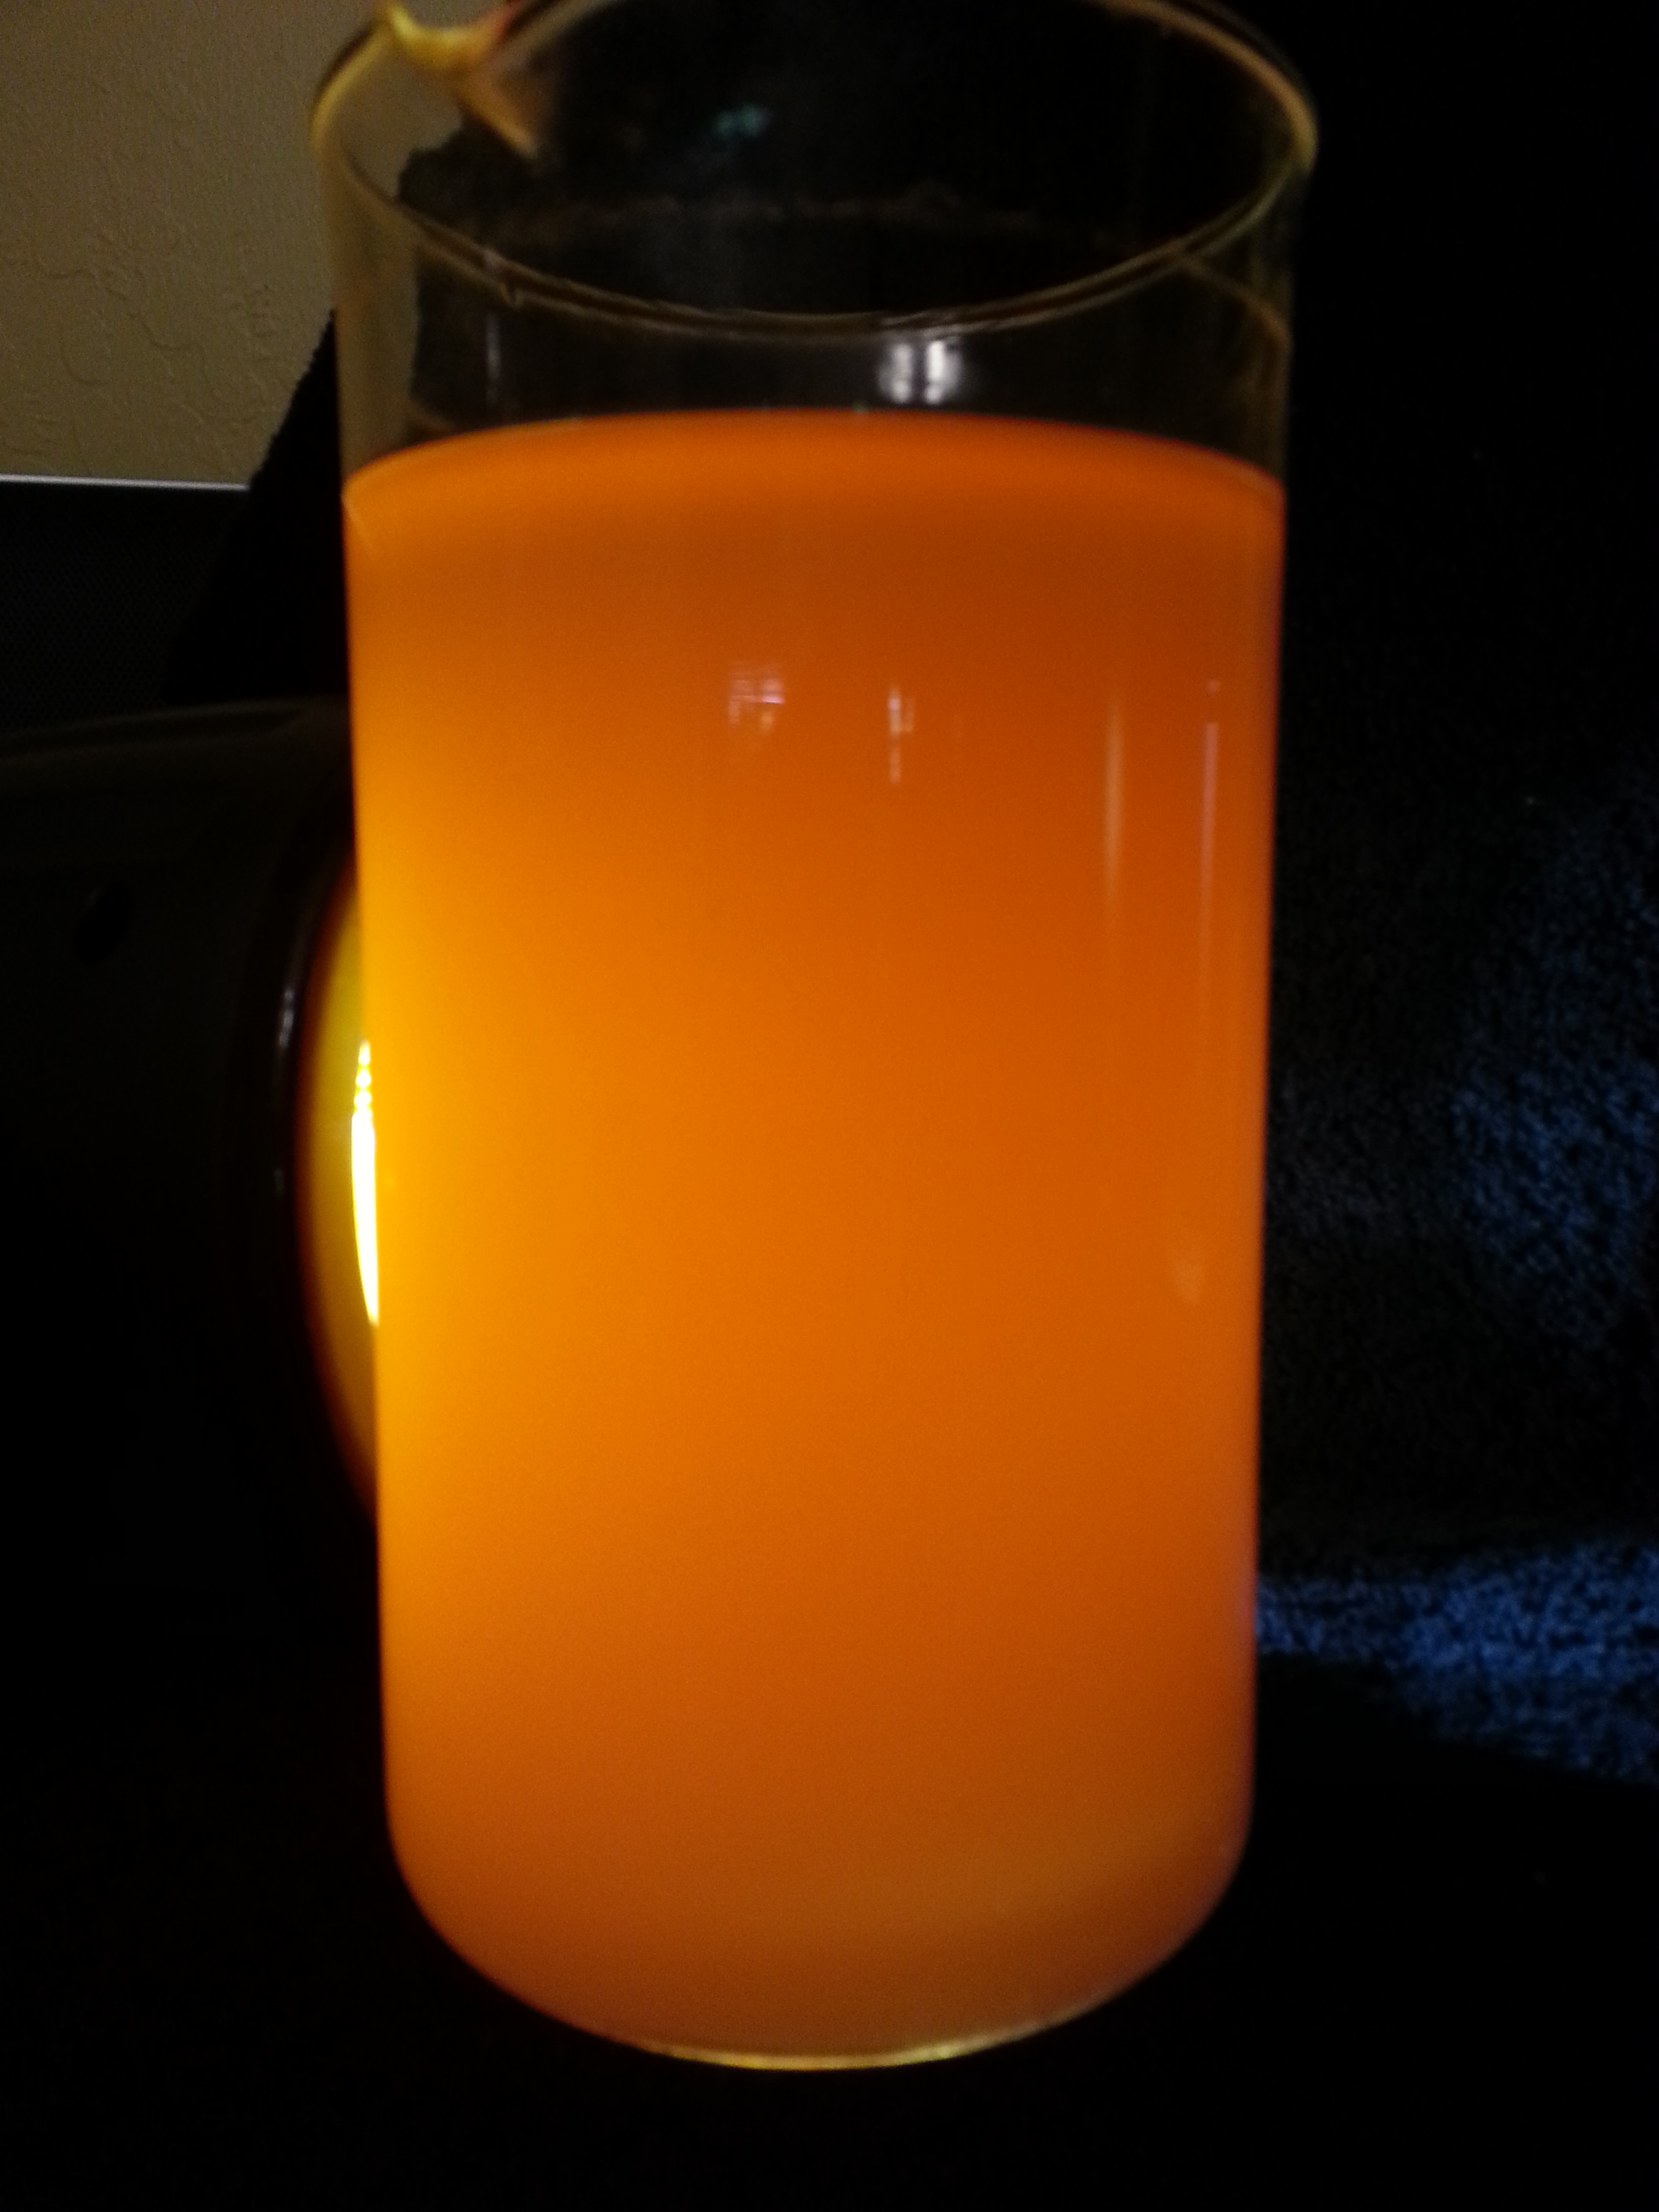 orange translucent paper